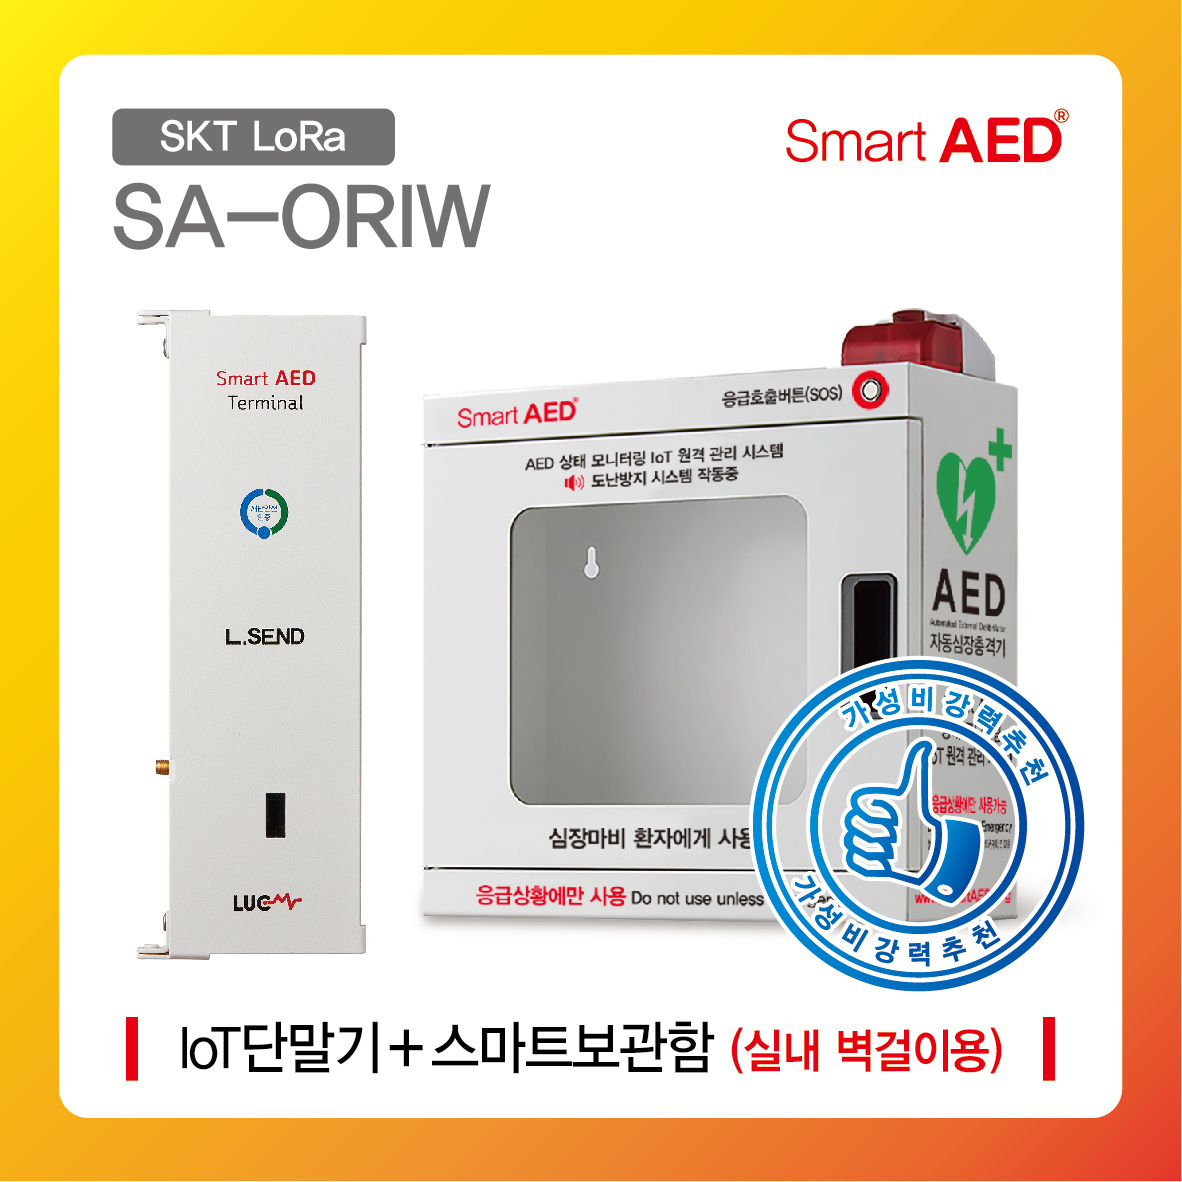 [ SA-ORIW ] 스마트 AED 통합모니터링 장치 및 보관함(실내 벽걸이형)